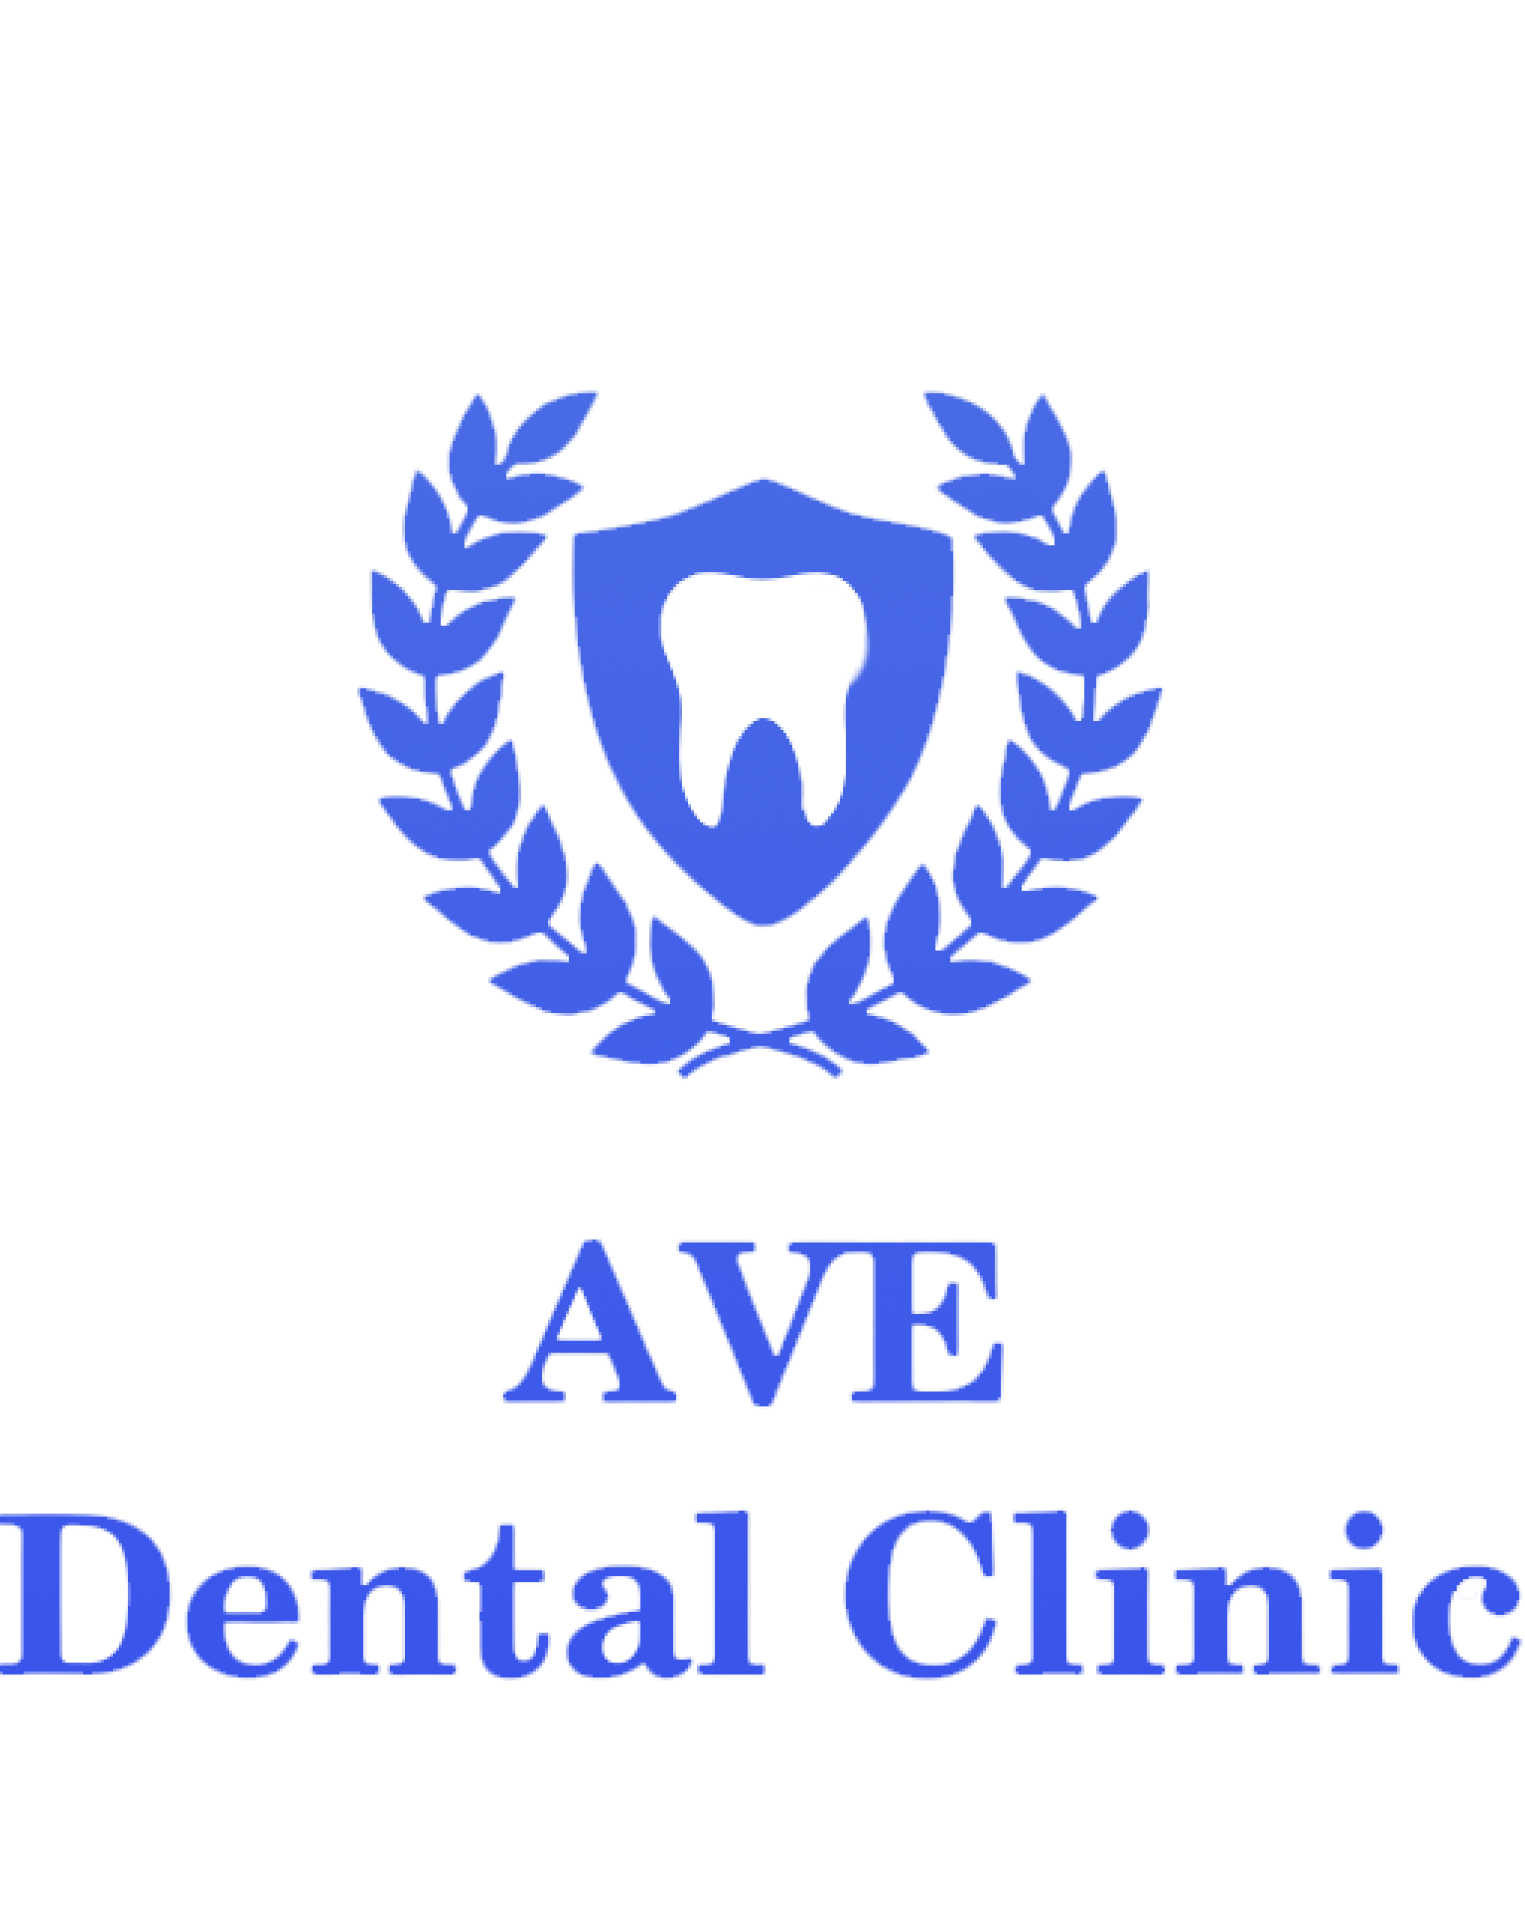 Ave Dental Clinic